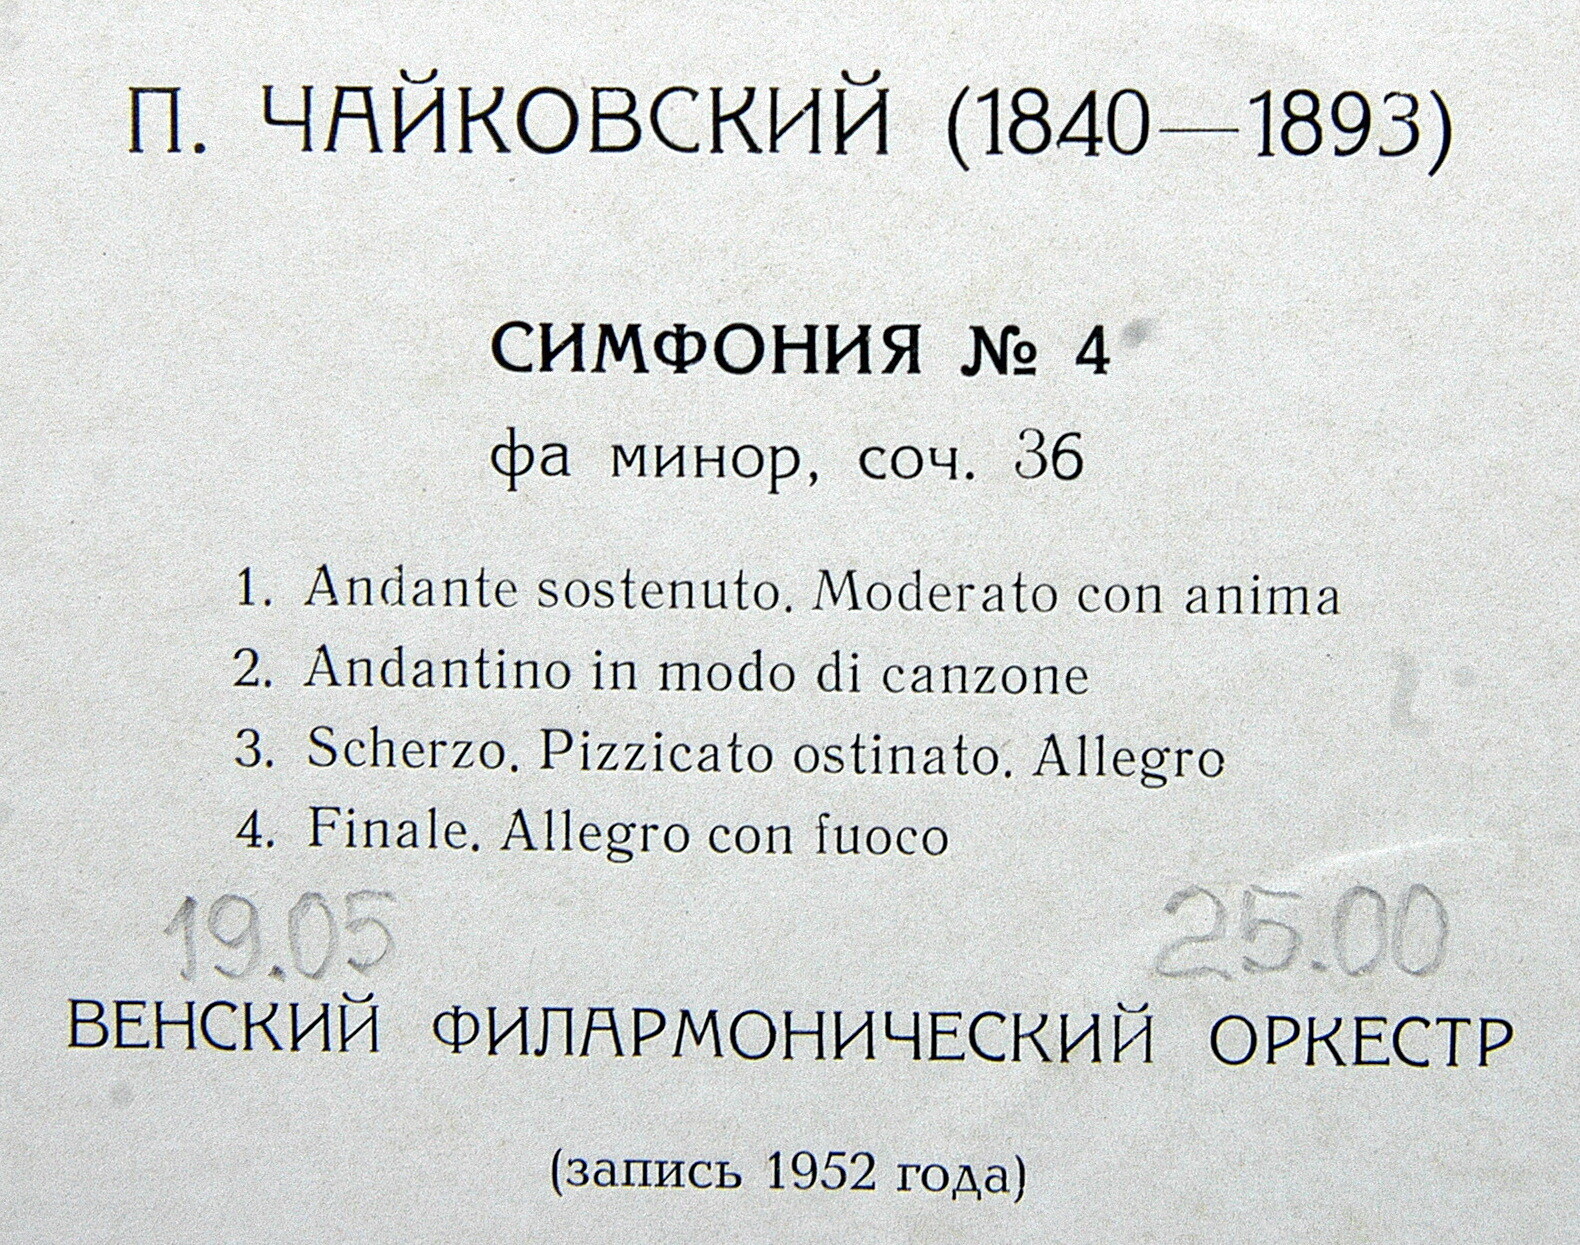 П. ЧАЙКОВСКИЙ (1840–1893): Симфония № 4 фа минор, соч. 36 (В. Фуртвенглер) [Выдающиеся дирижёры]